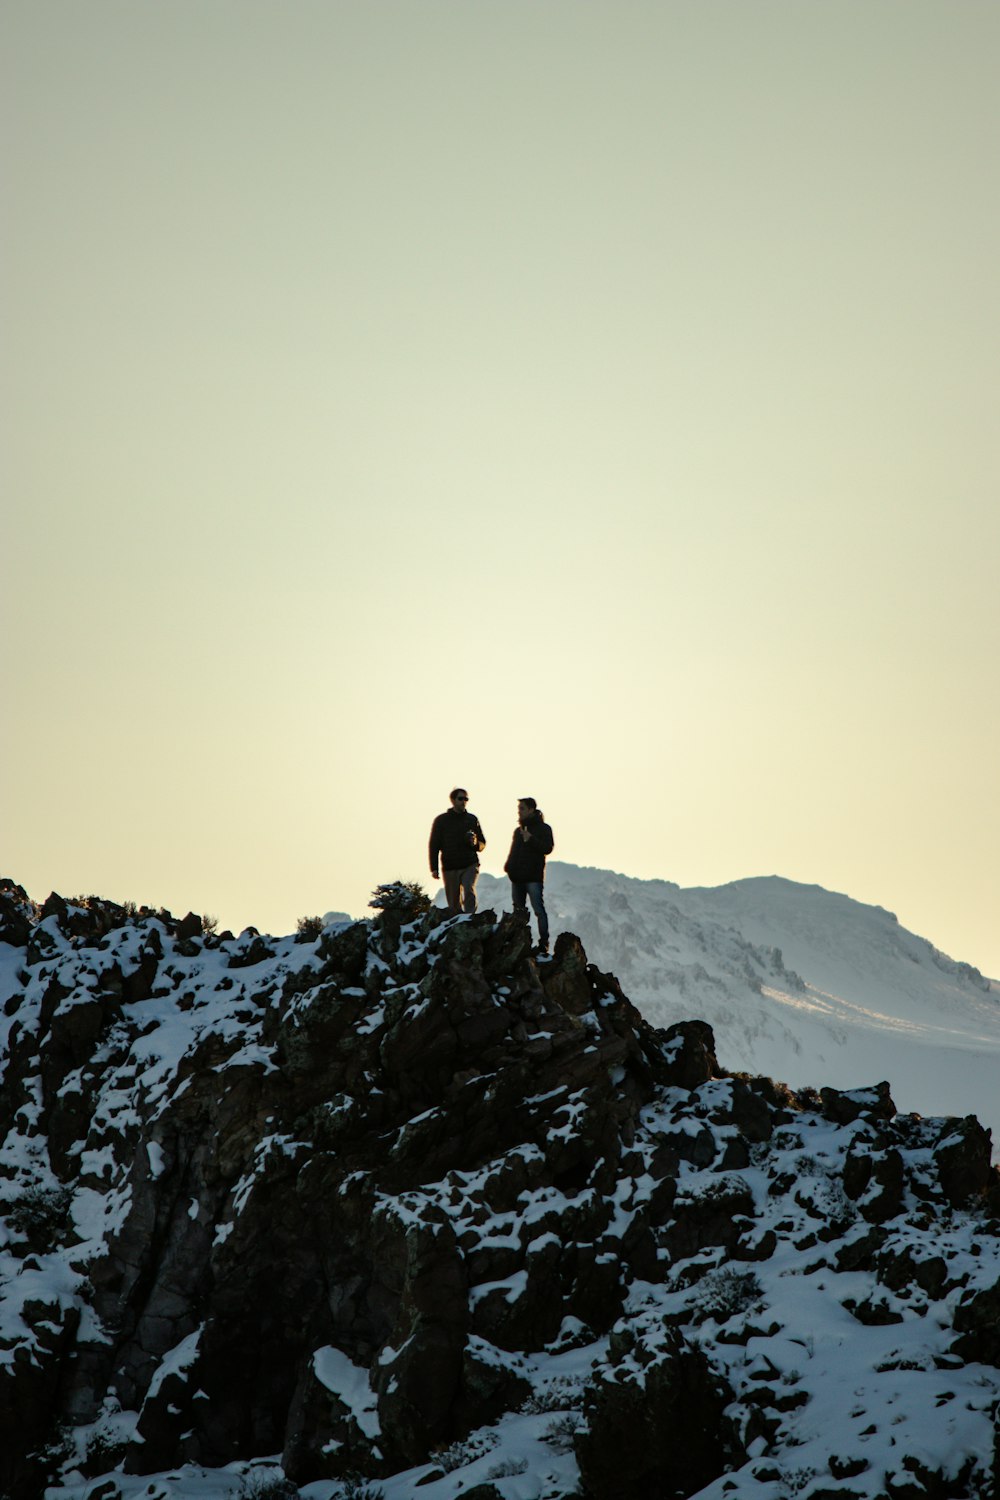 눈 덮인 산에 서있는 두 사람